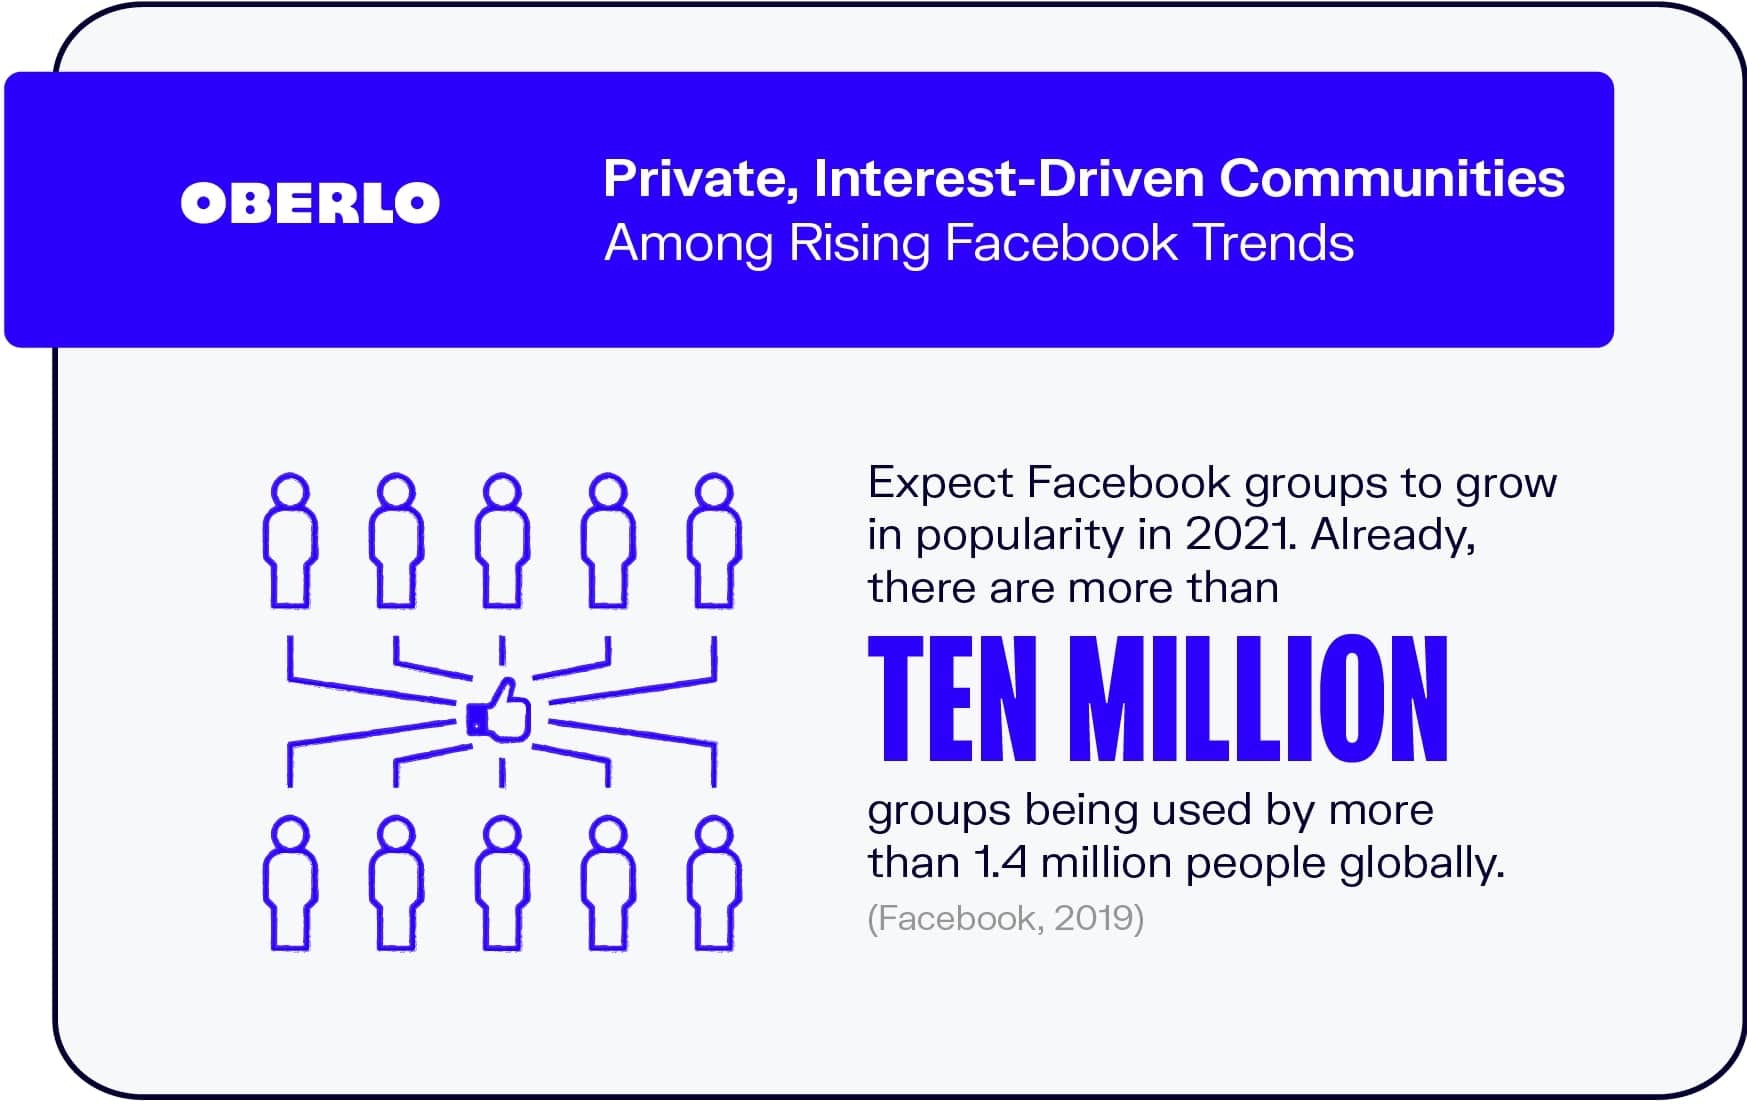 Comunidades privadas impulsadas por intereses entre las tendencias crecientes de Facebook